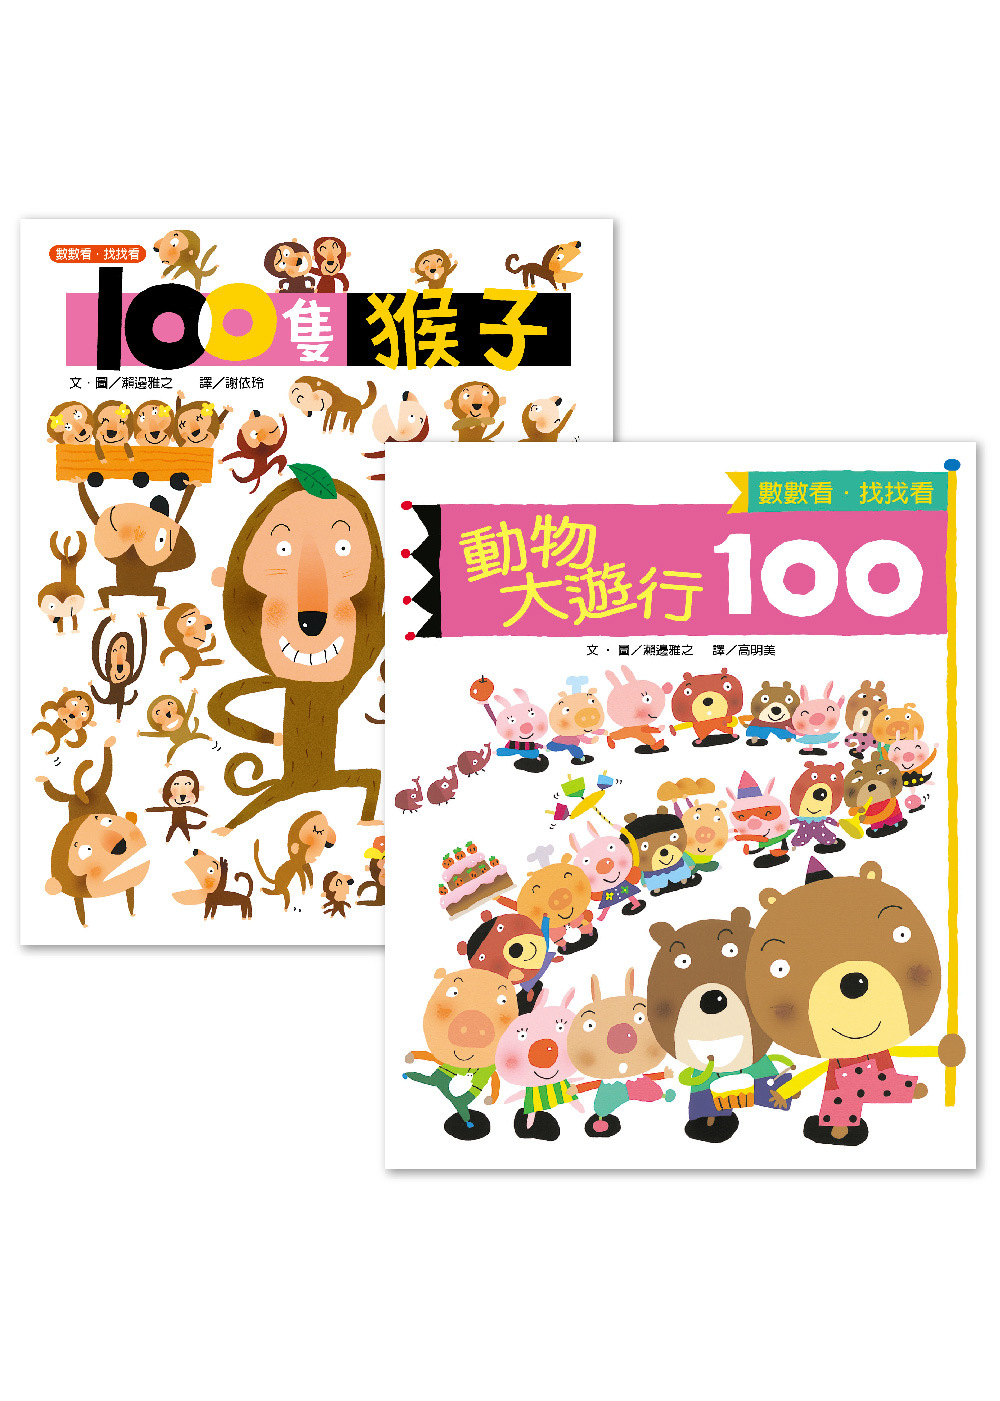 《100隻猴子》+《動物大遊行100》套書